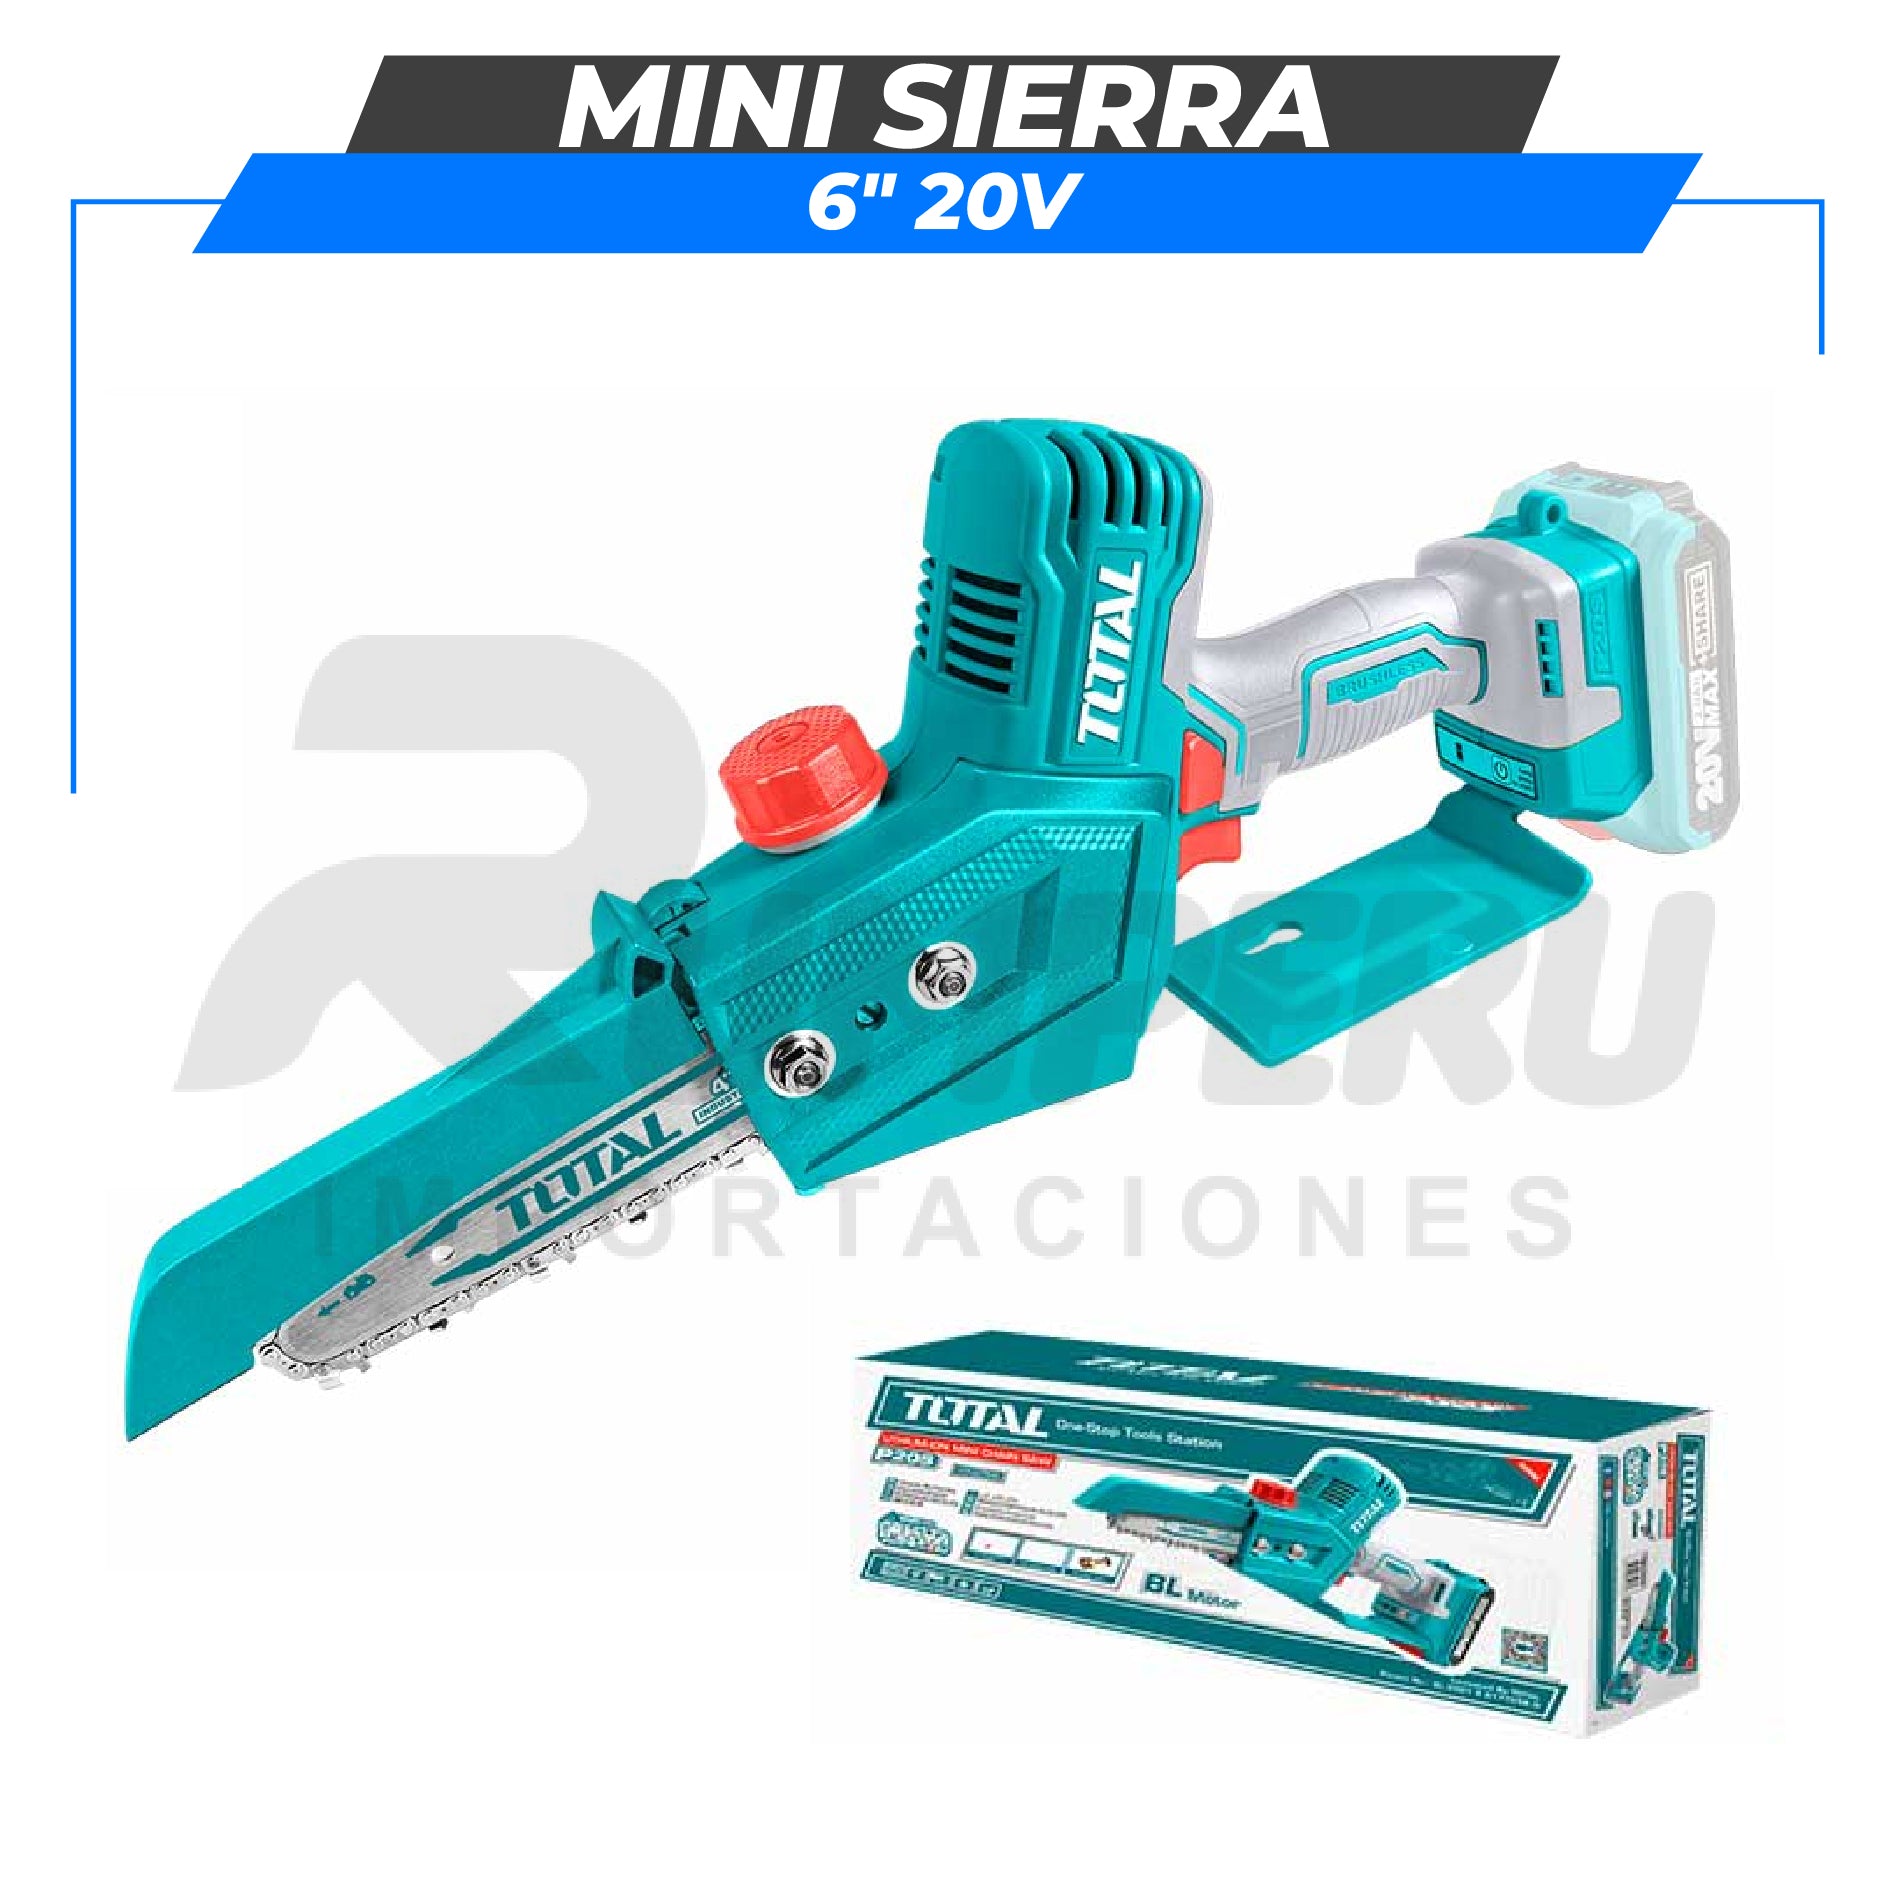 Mini sierra 6" 20v